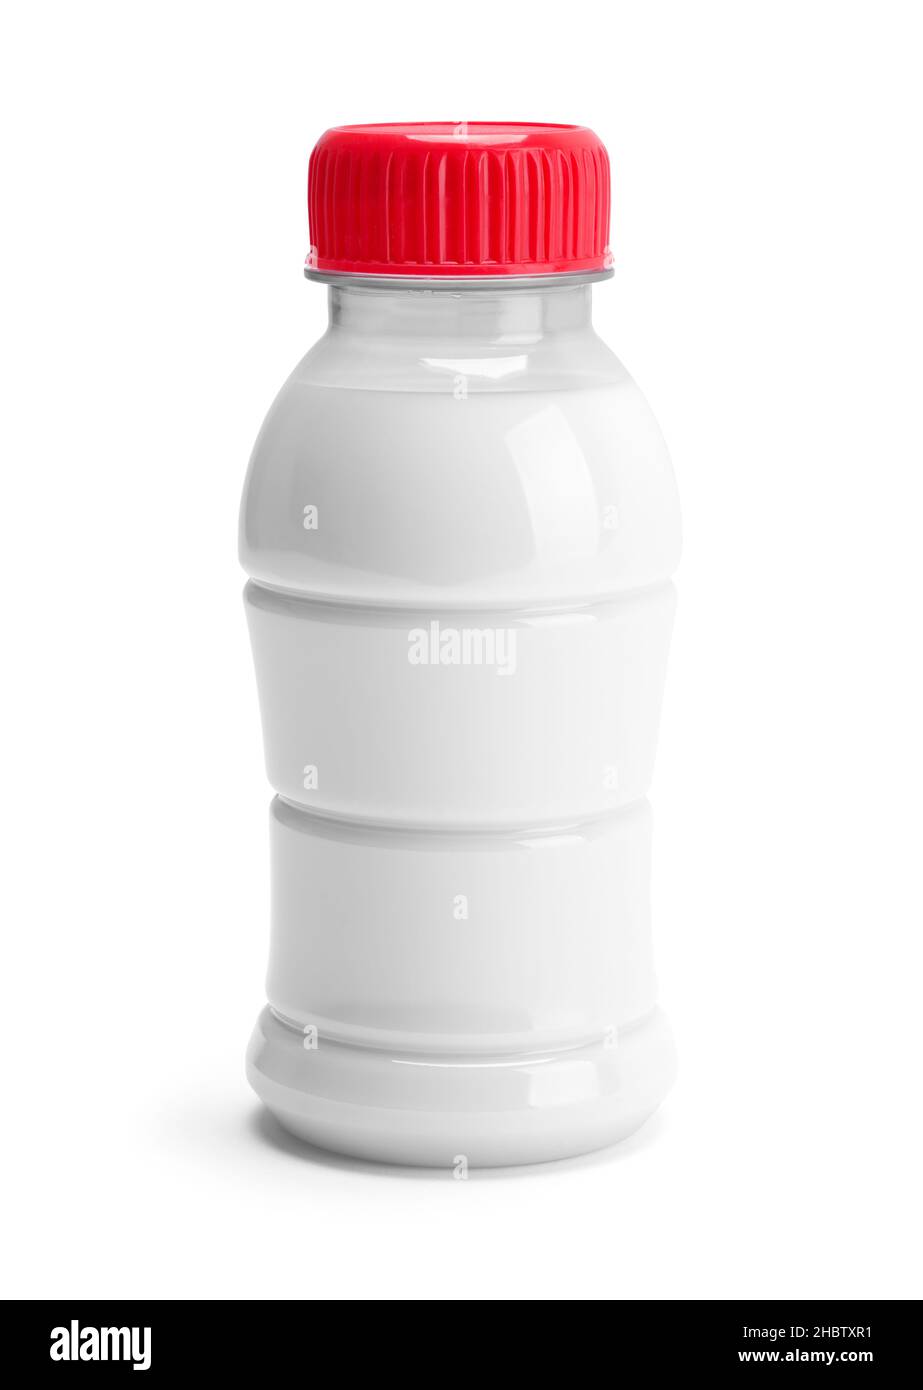 https://c8.alamy.com/comp/2HBTXR1/small-plastic-milk-bottle-front-view-cut-out-on-white-2HBTXR1.jpg